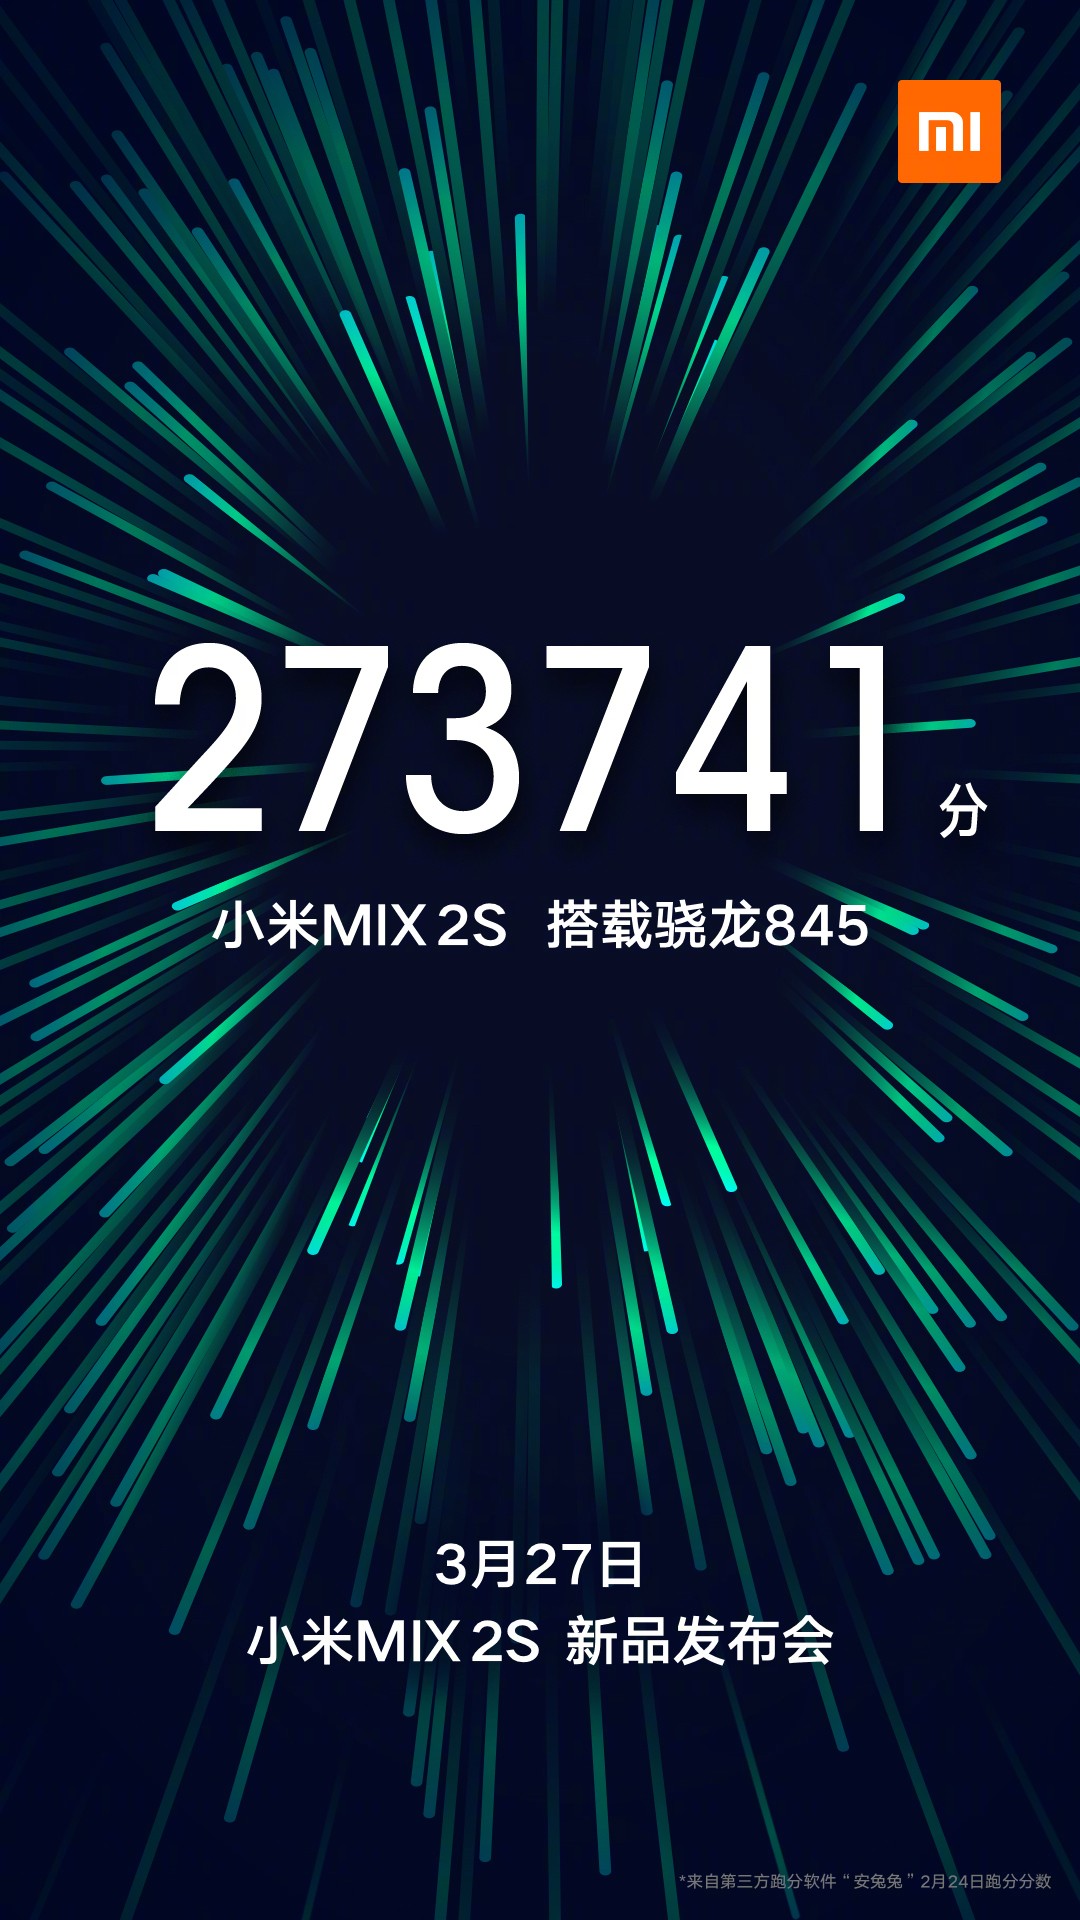 Xiaomi Mi MIX2S se lanzará el 27 de marzo con el chipset Snapdragon 845